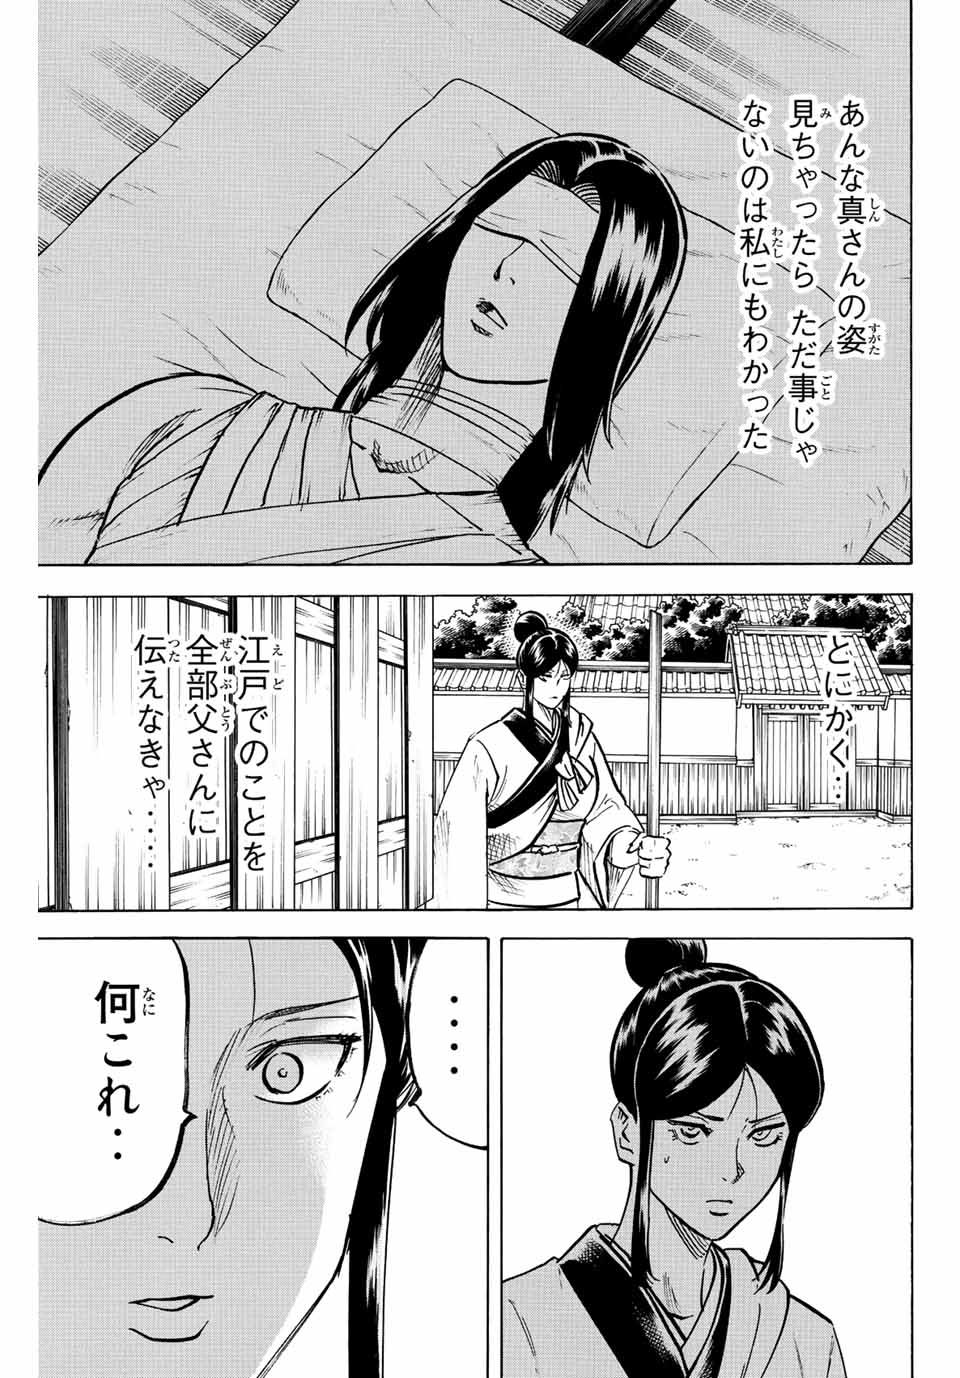 我間乱 ―修羅― 第220話 - Page 3